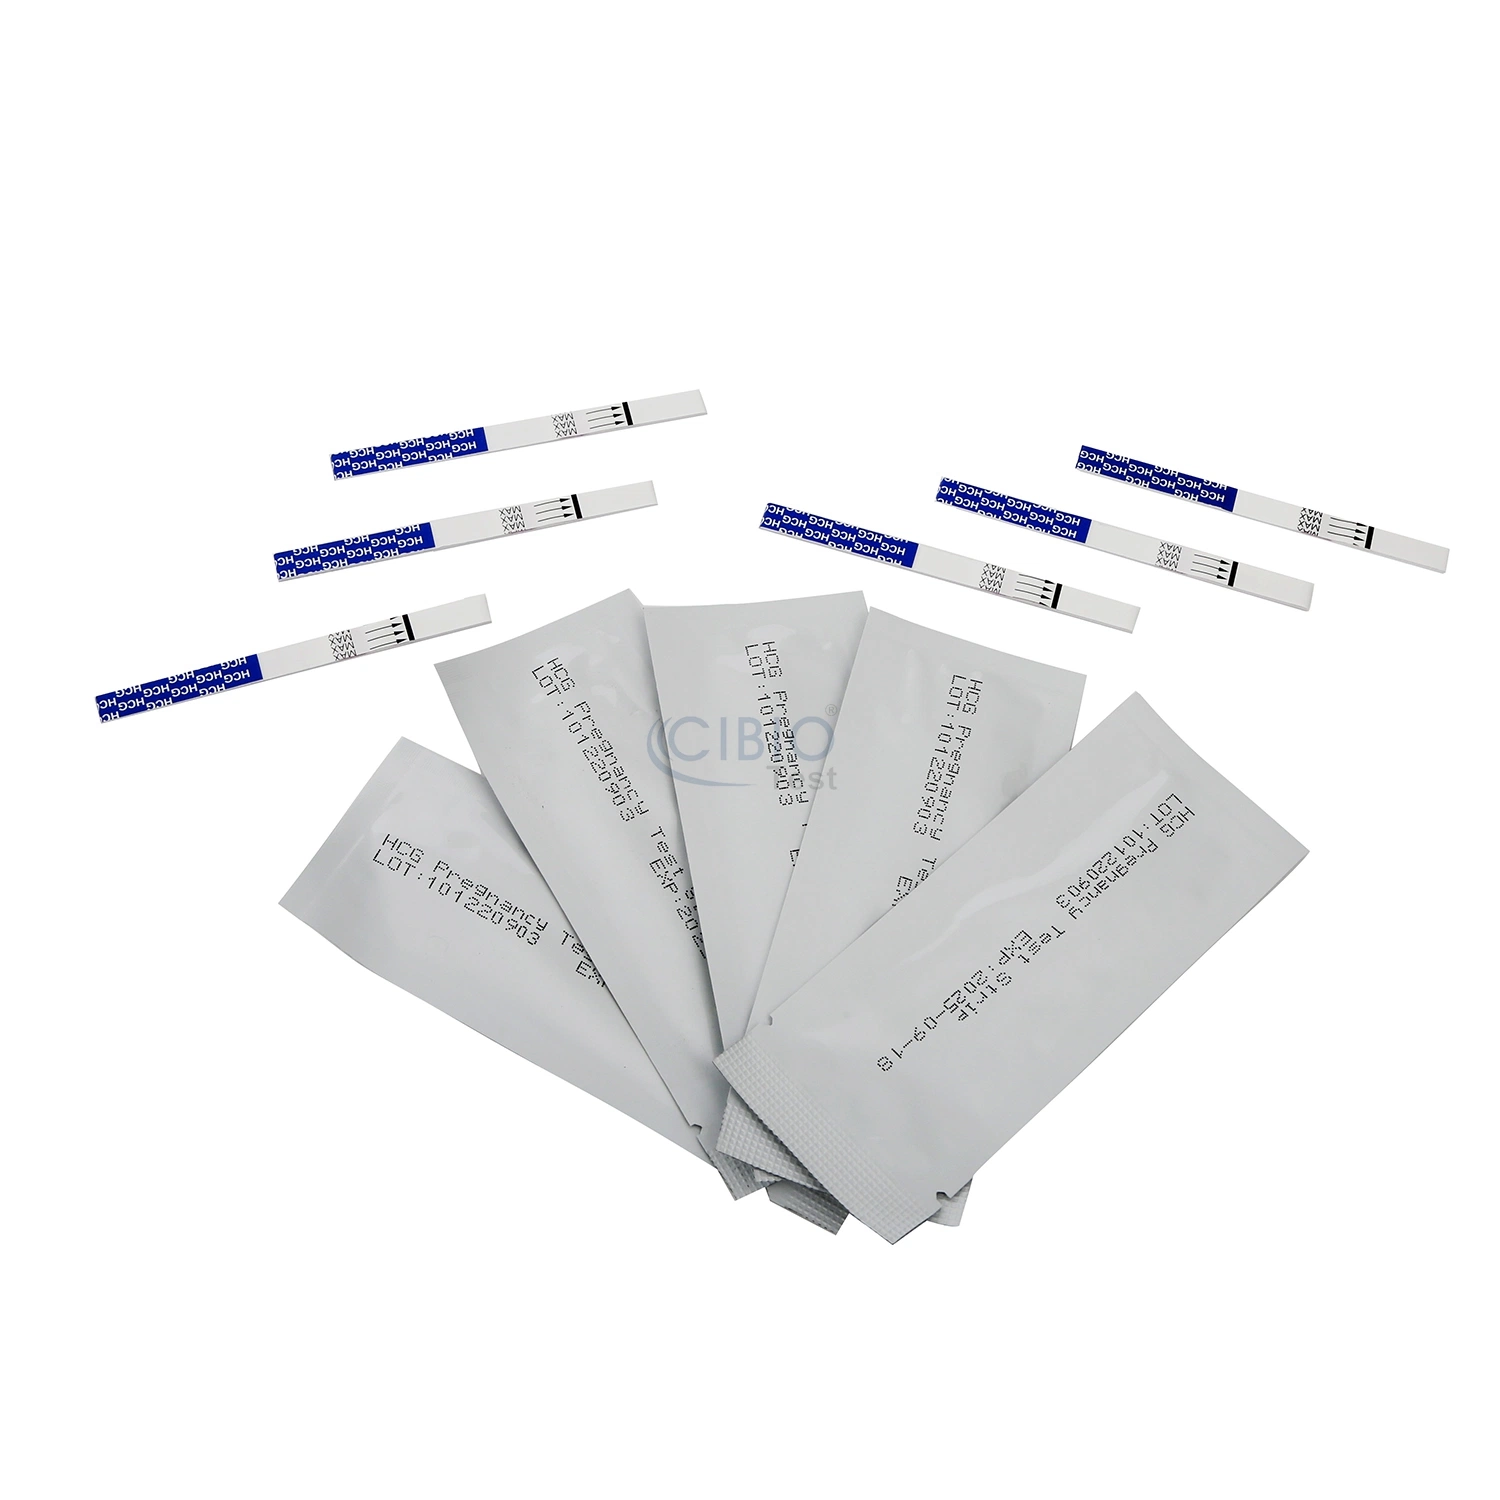 CE marcou outros dispositivos médicos domésticos Urine HCG Pregnancy Test Kits Strip